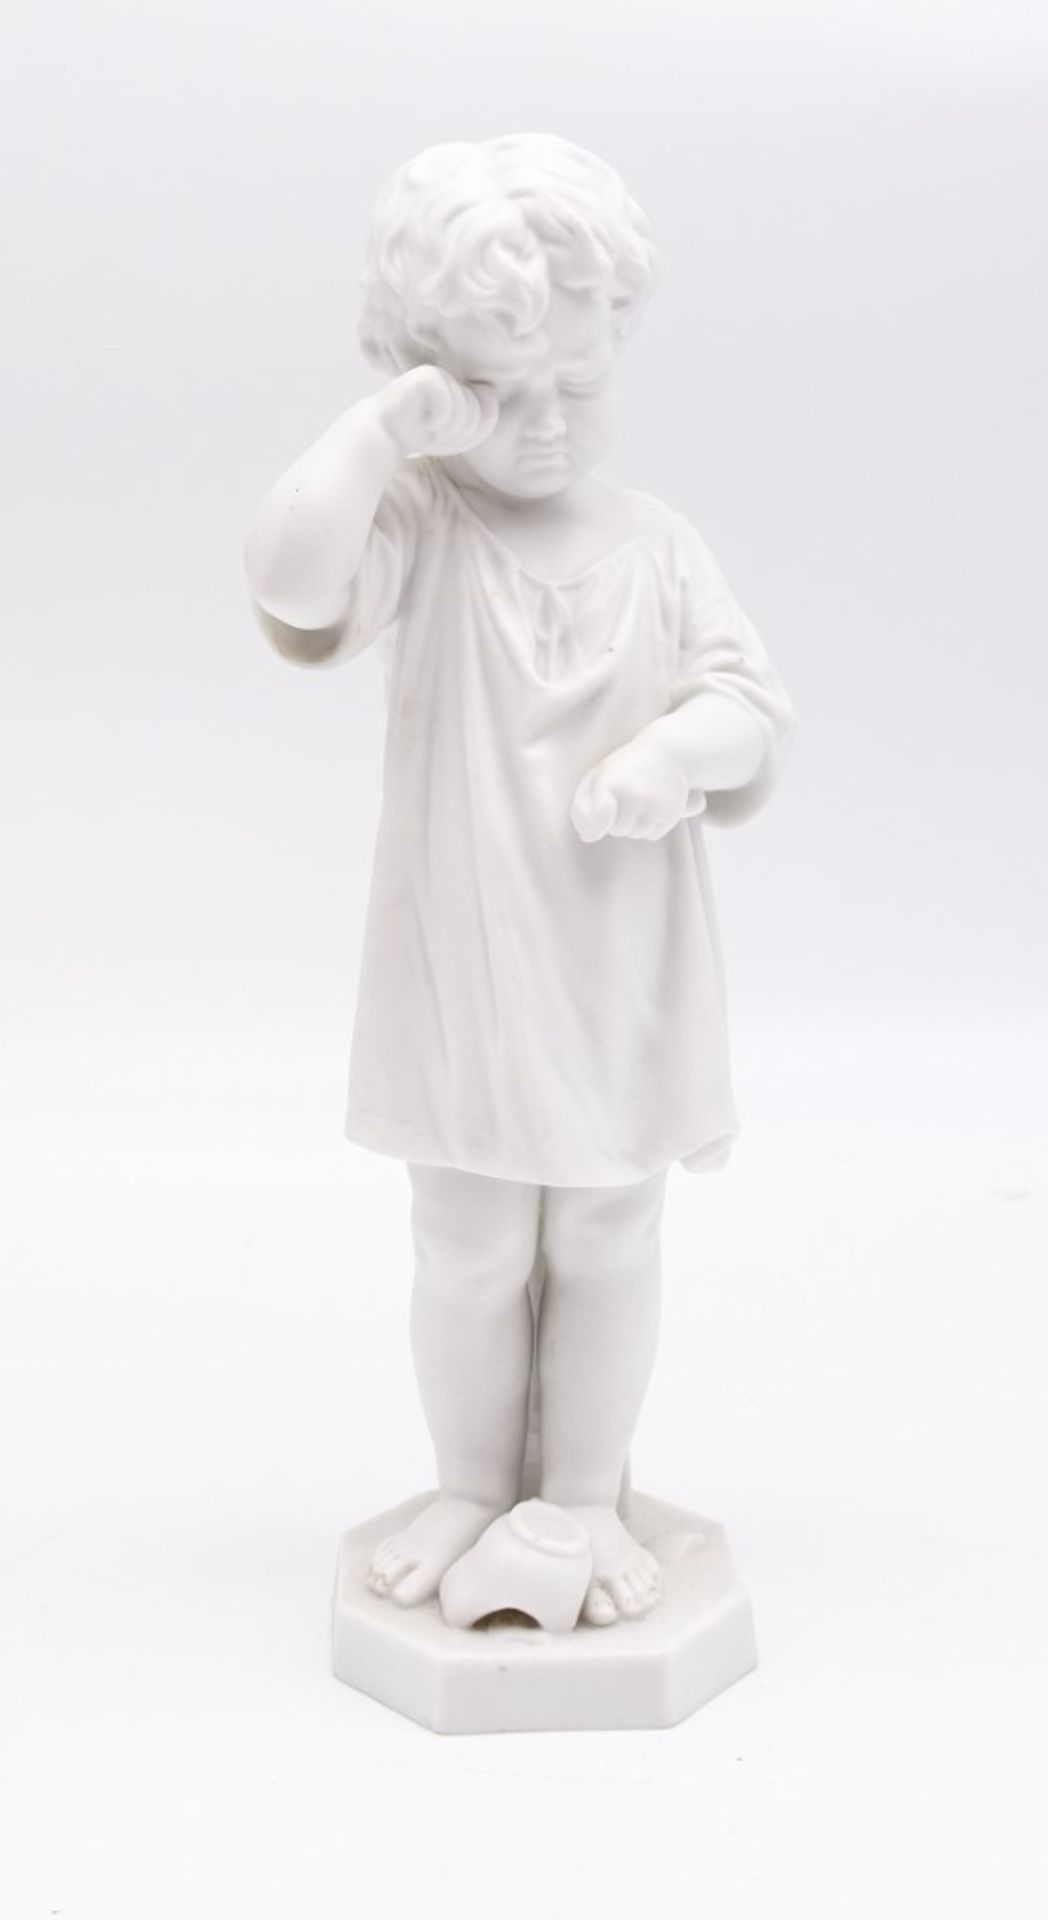 Kinderfigur aus Biskuitporzellan mit zerbrochenem Krug, ungemarkt, H. 24 cm, leicht reinigungsbedür - Image 2 of 8